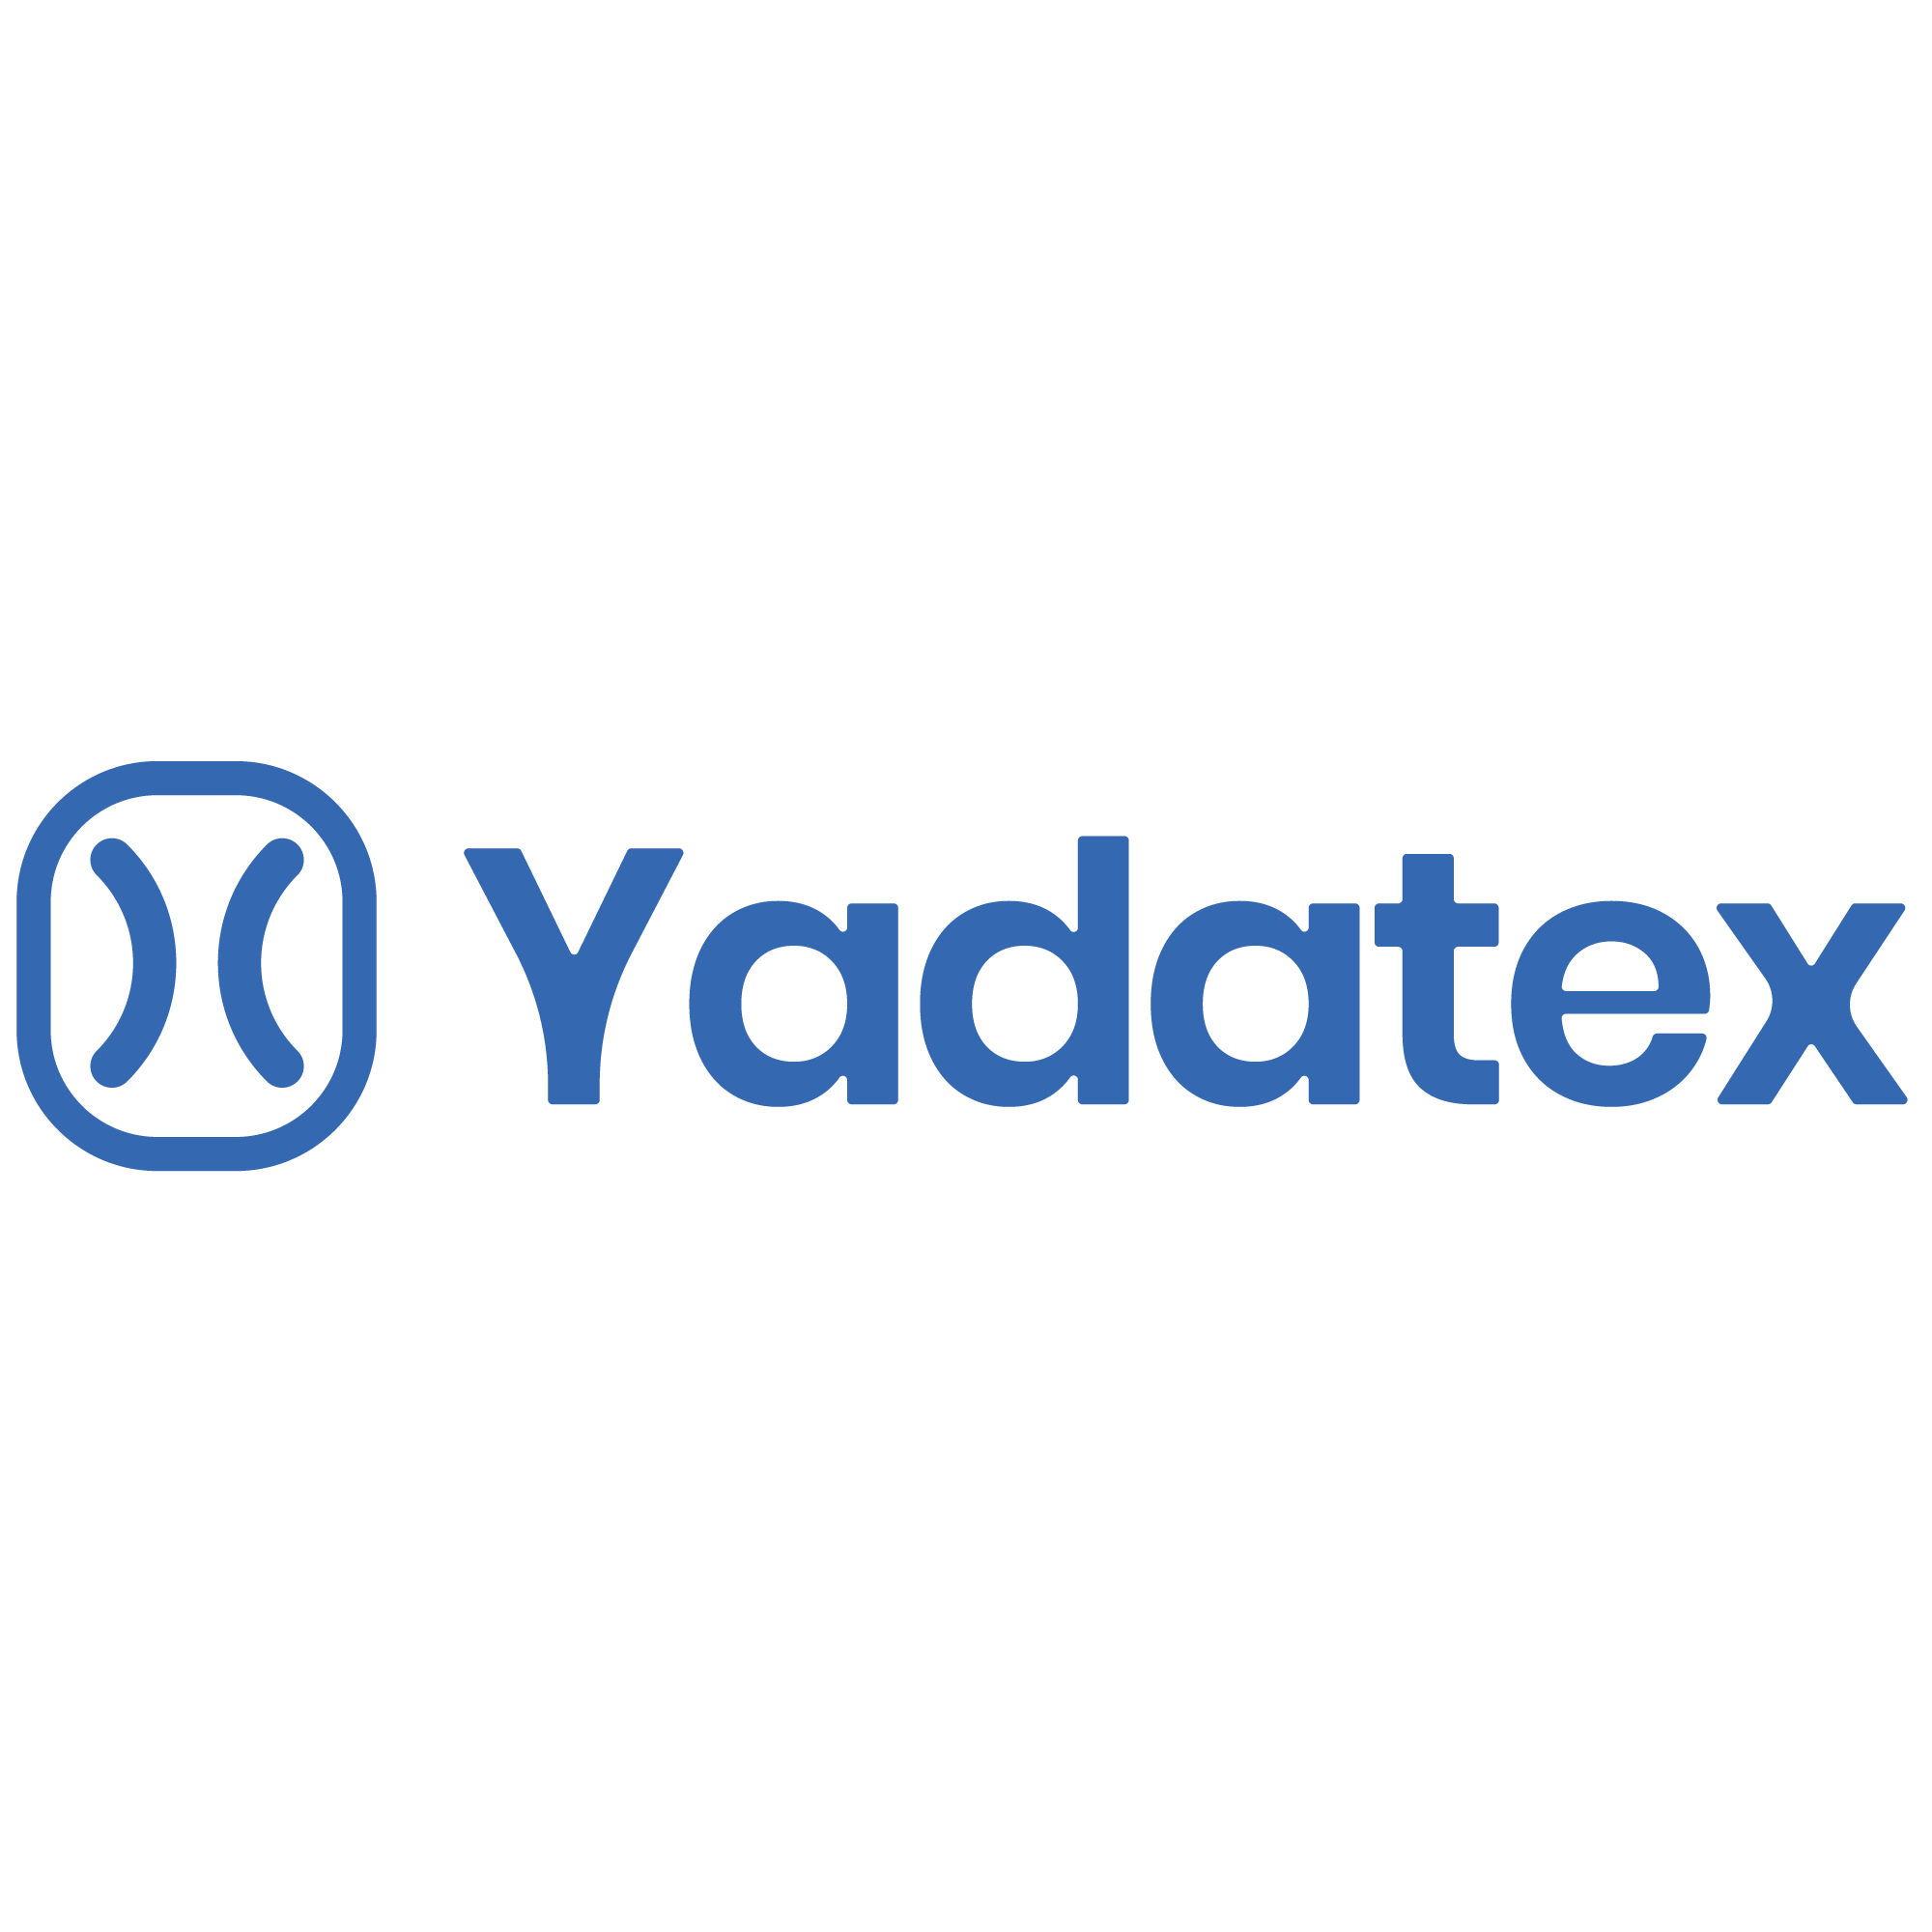 Yadatex